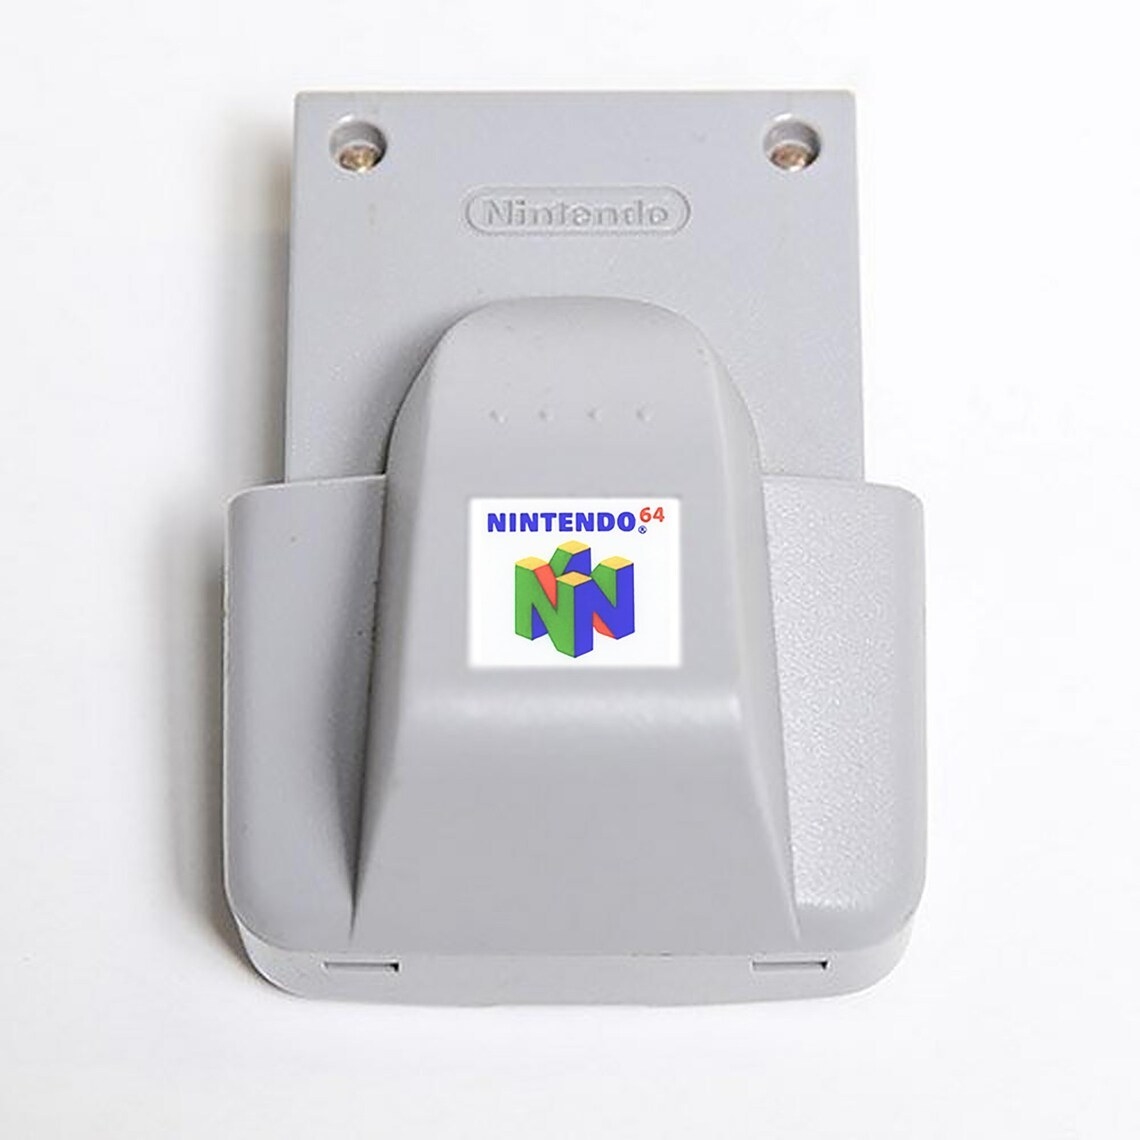 An N64 console